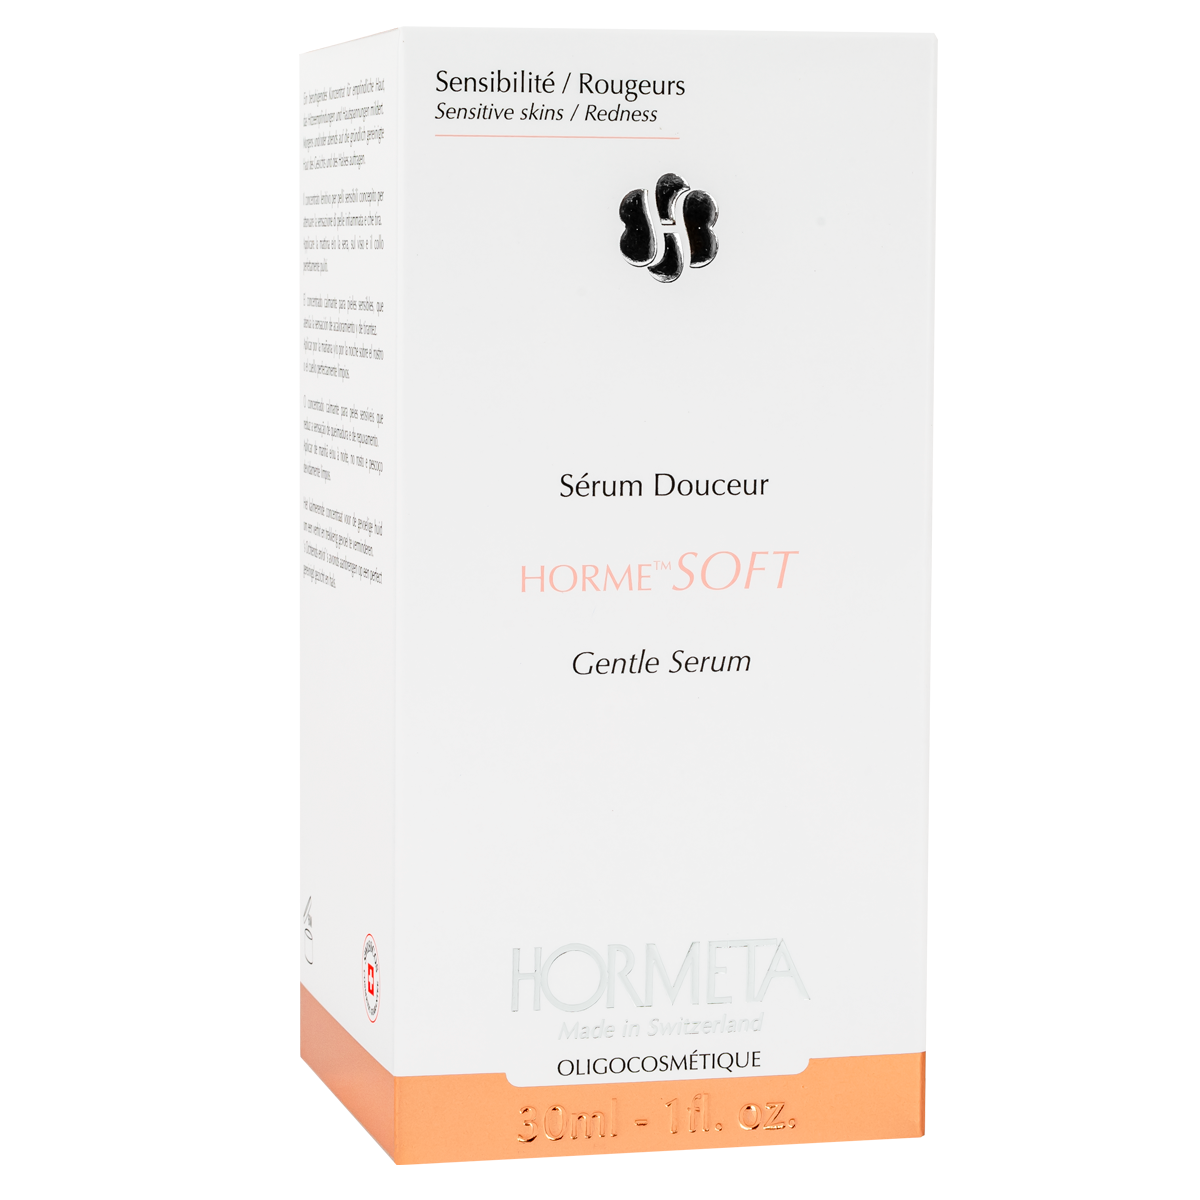 HORME SOFT Gentle Serum - lindrende serum for sensitiv hud